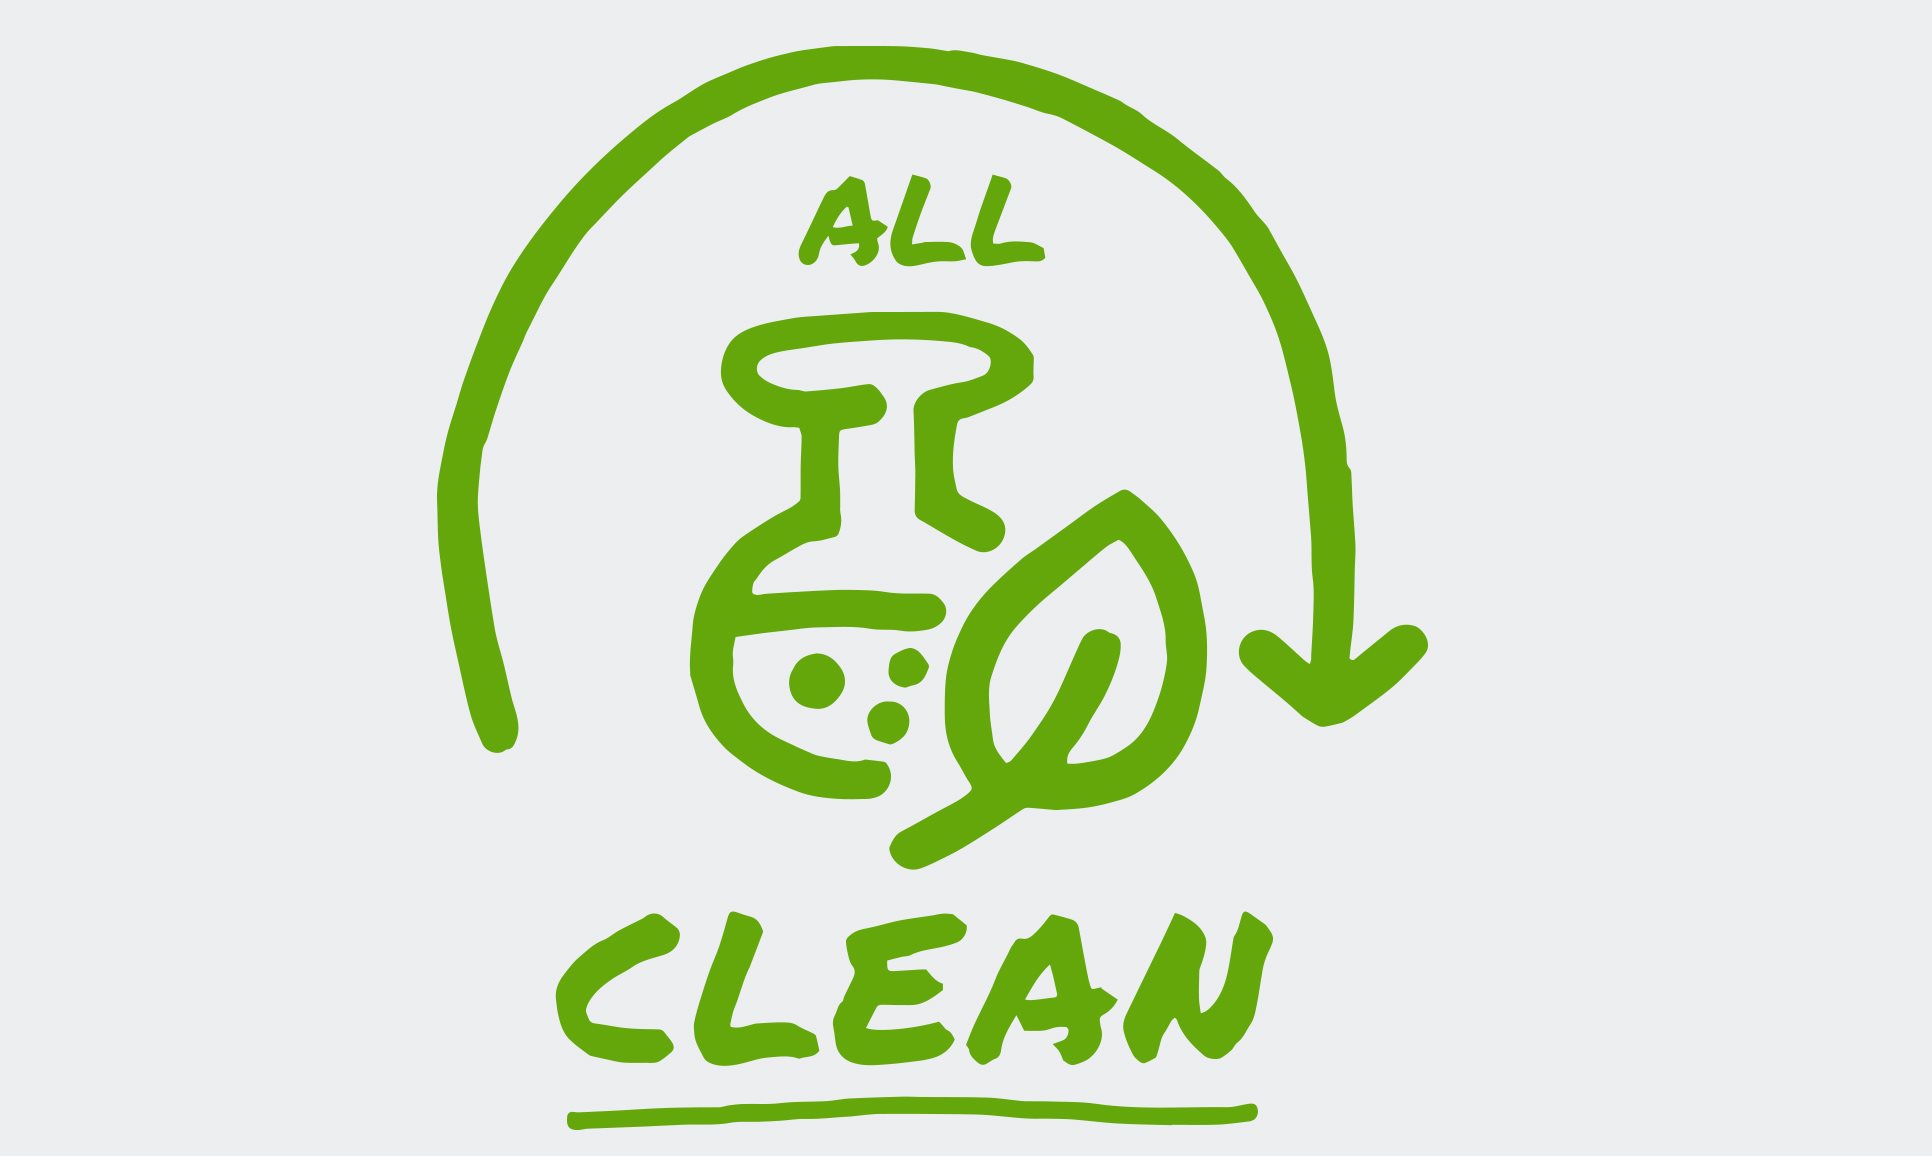 Un'icona illustrata mostra una freccia che forma un semicerchio intorno alle parole "All Clean", che appare accanto a una foglia e a un bicchiere.